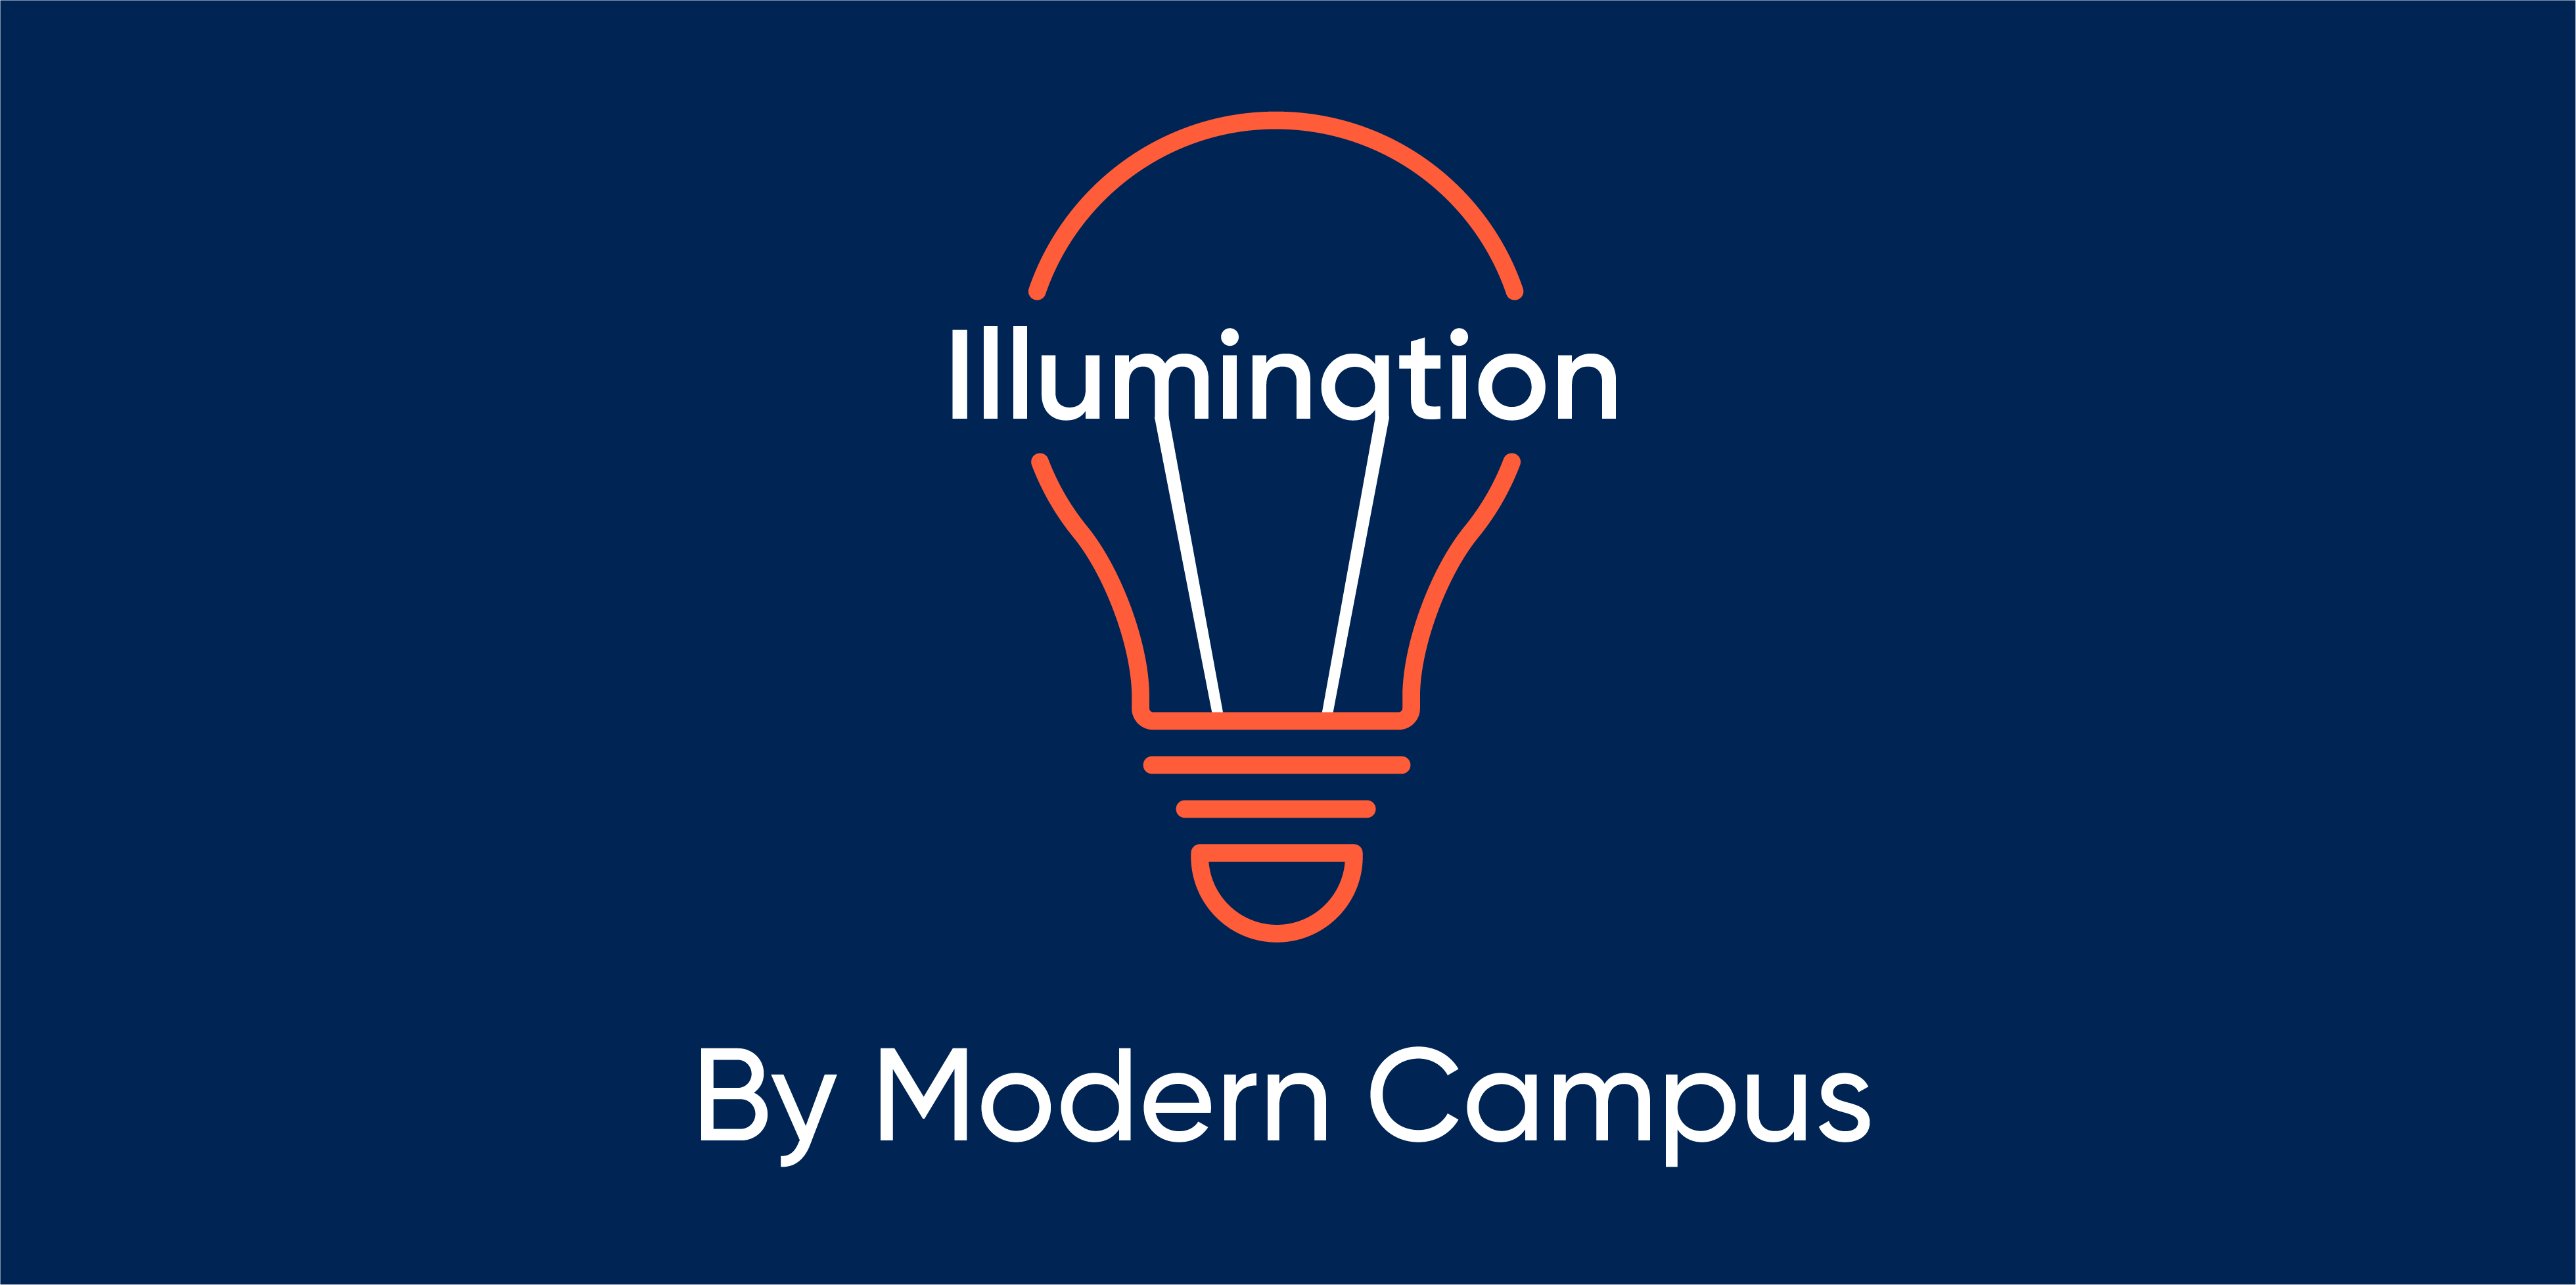 Episode 125: Illumination by Modern Campus